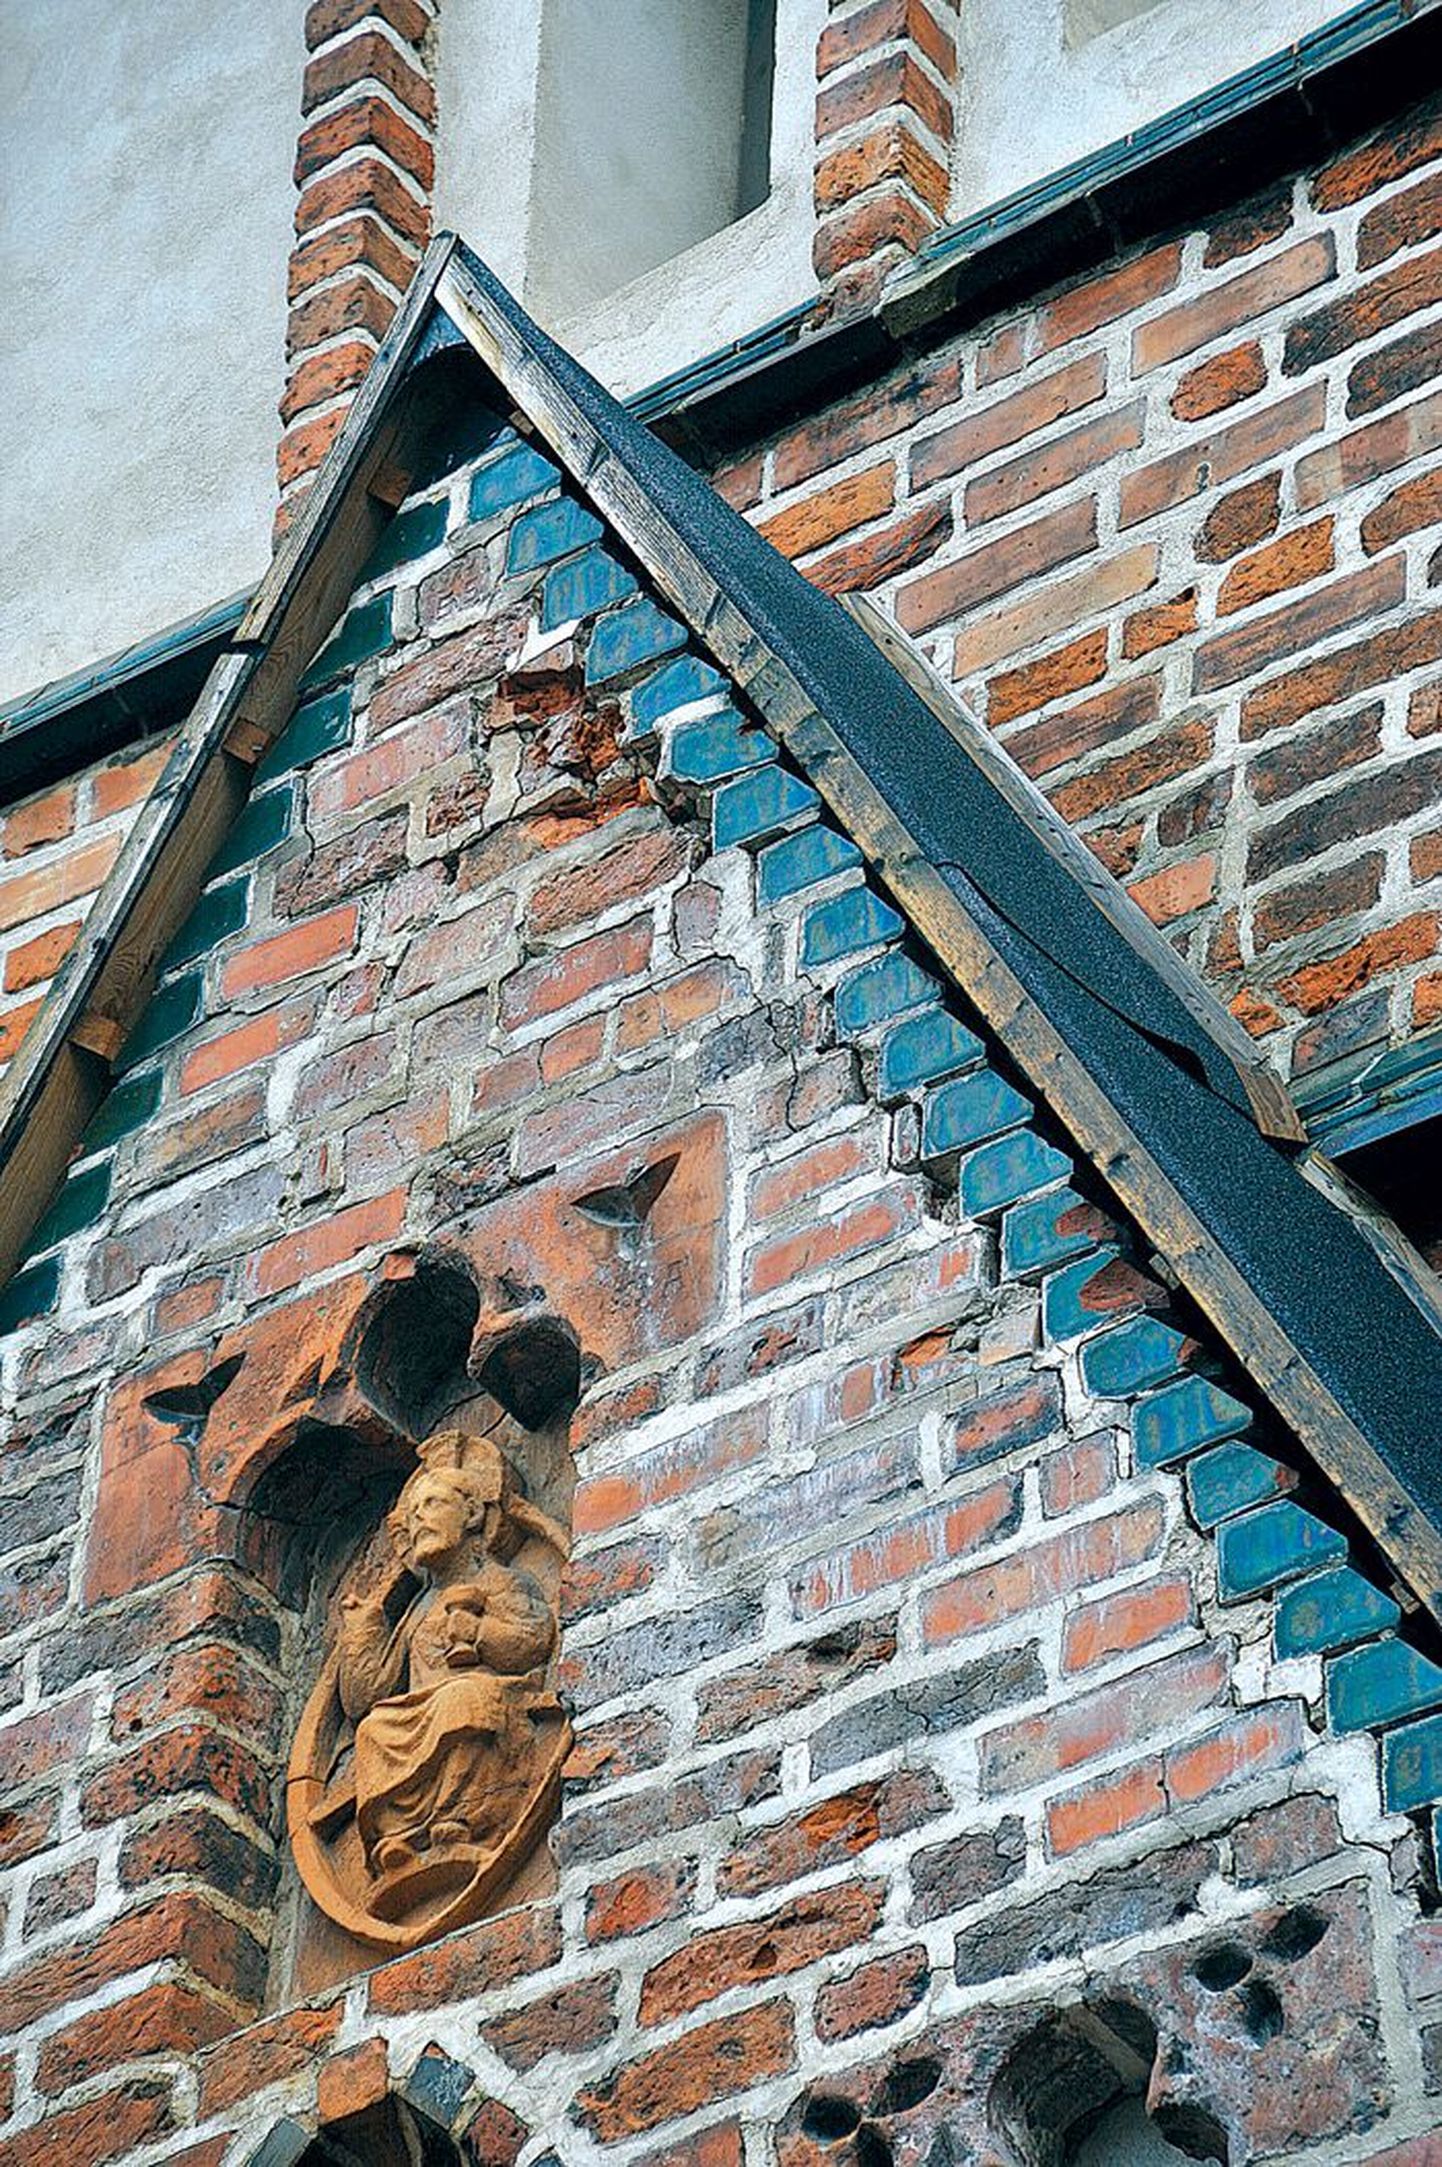 Jaani kiriku peaukse kohal näeb liigniiskuses mõranenud ja kohati pudedaks muutunud tellistega seina. Halvema vältimiseks kaitseb lagunevat portaali ajutine tõrvapapist katus.